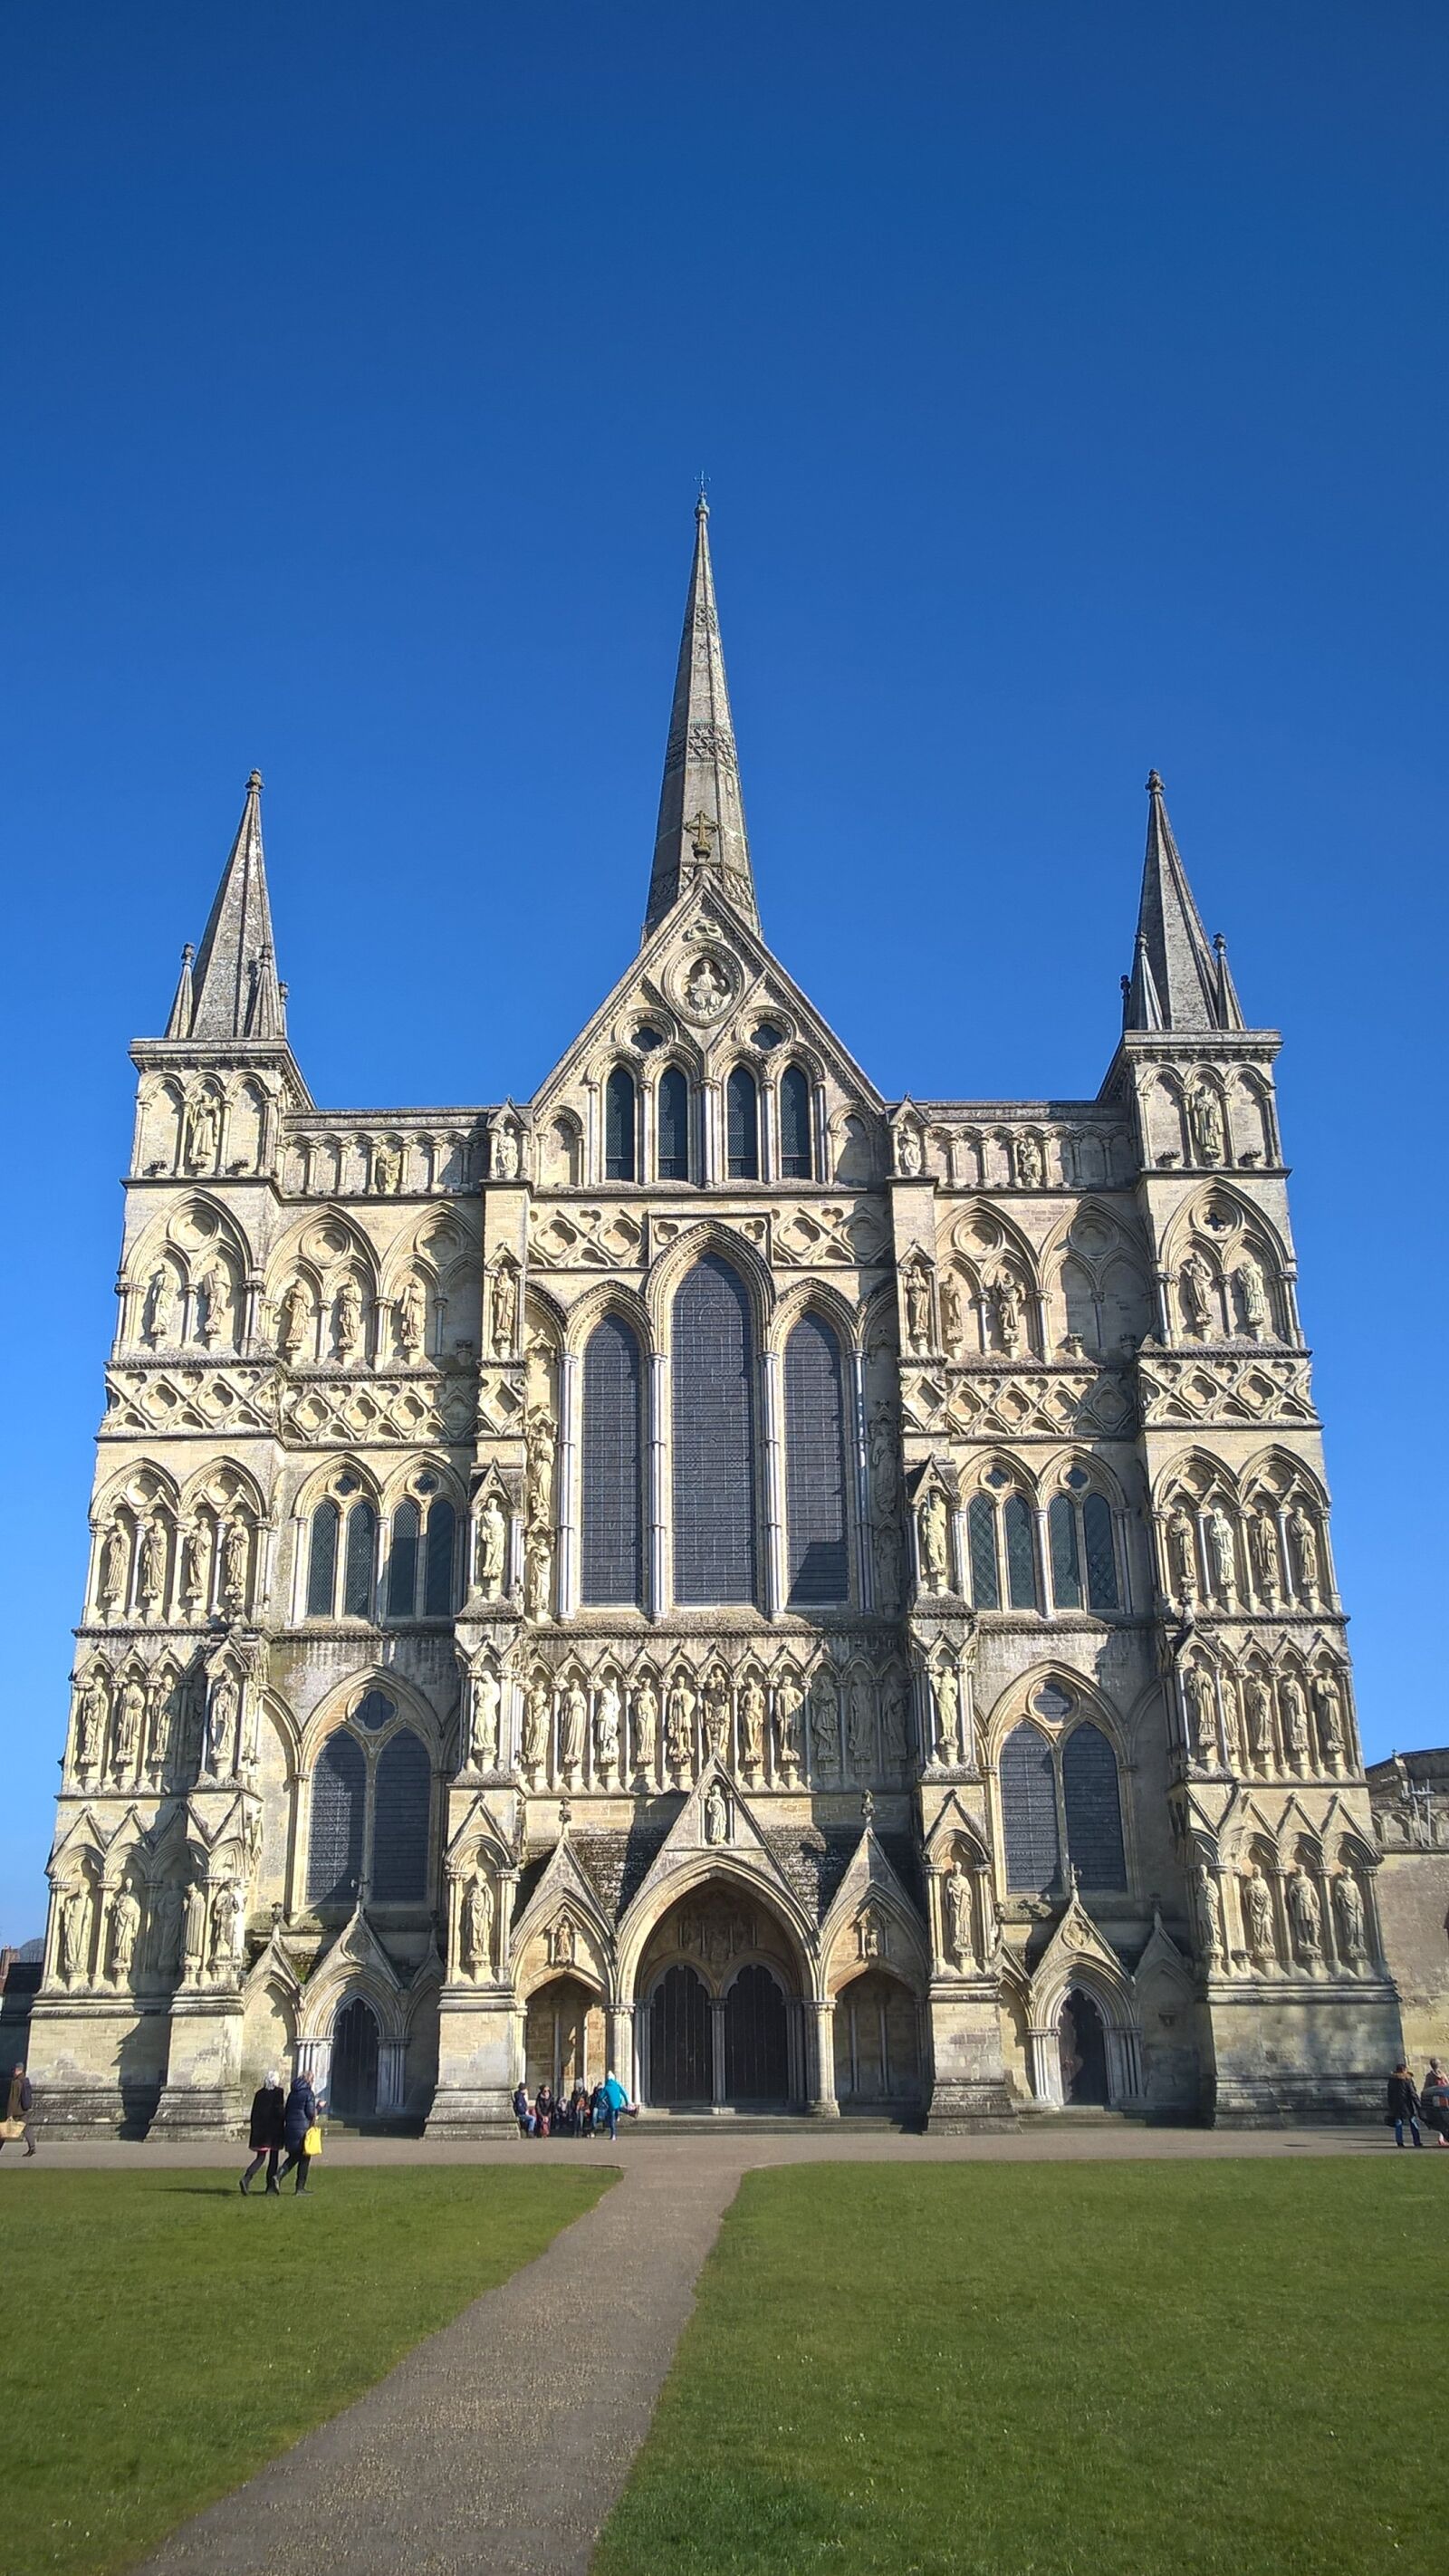 Nokia Lumia 830 sample photo. Cathedral, salisbury, gothic photography